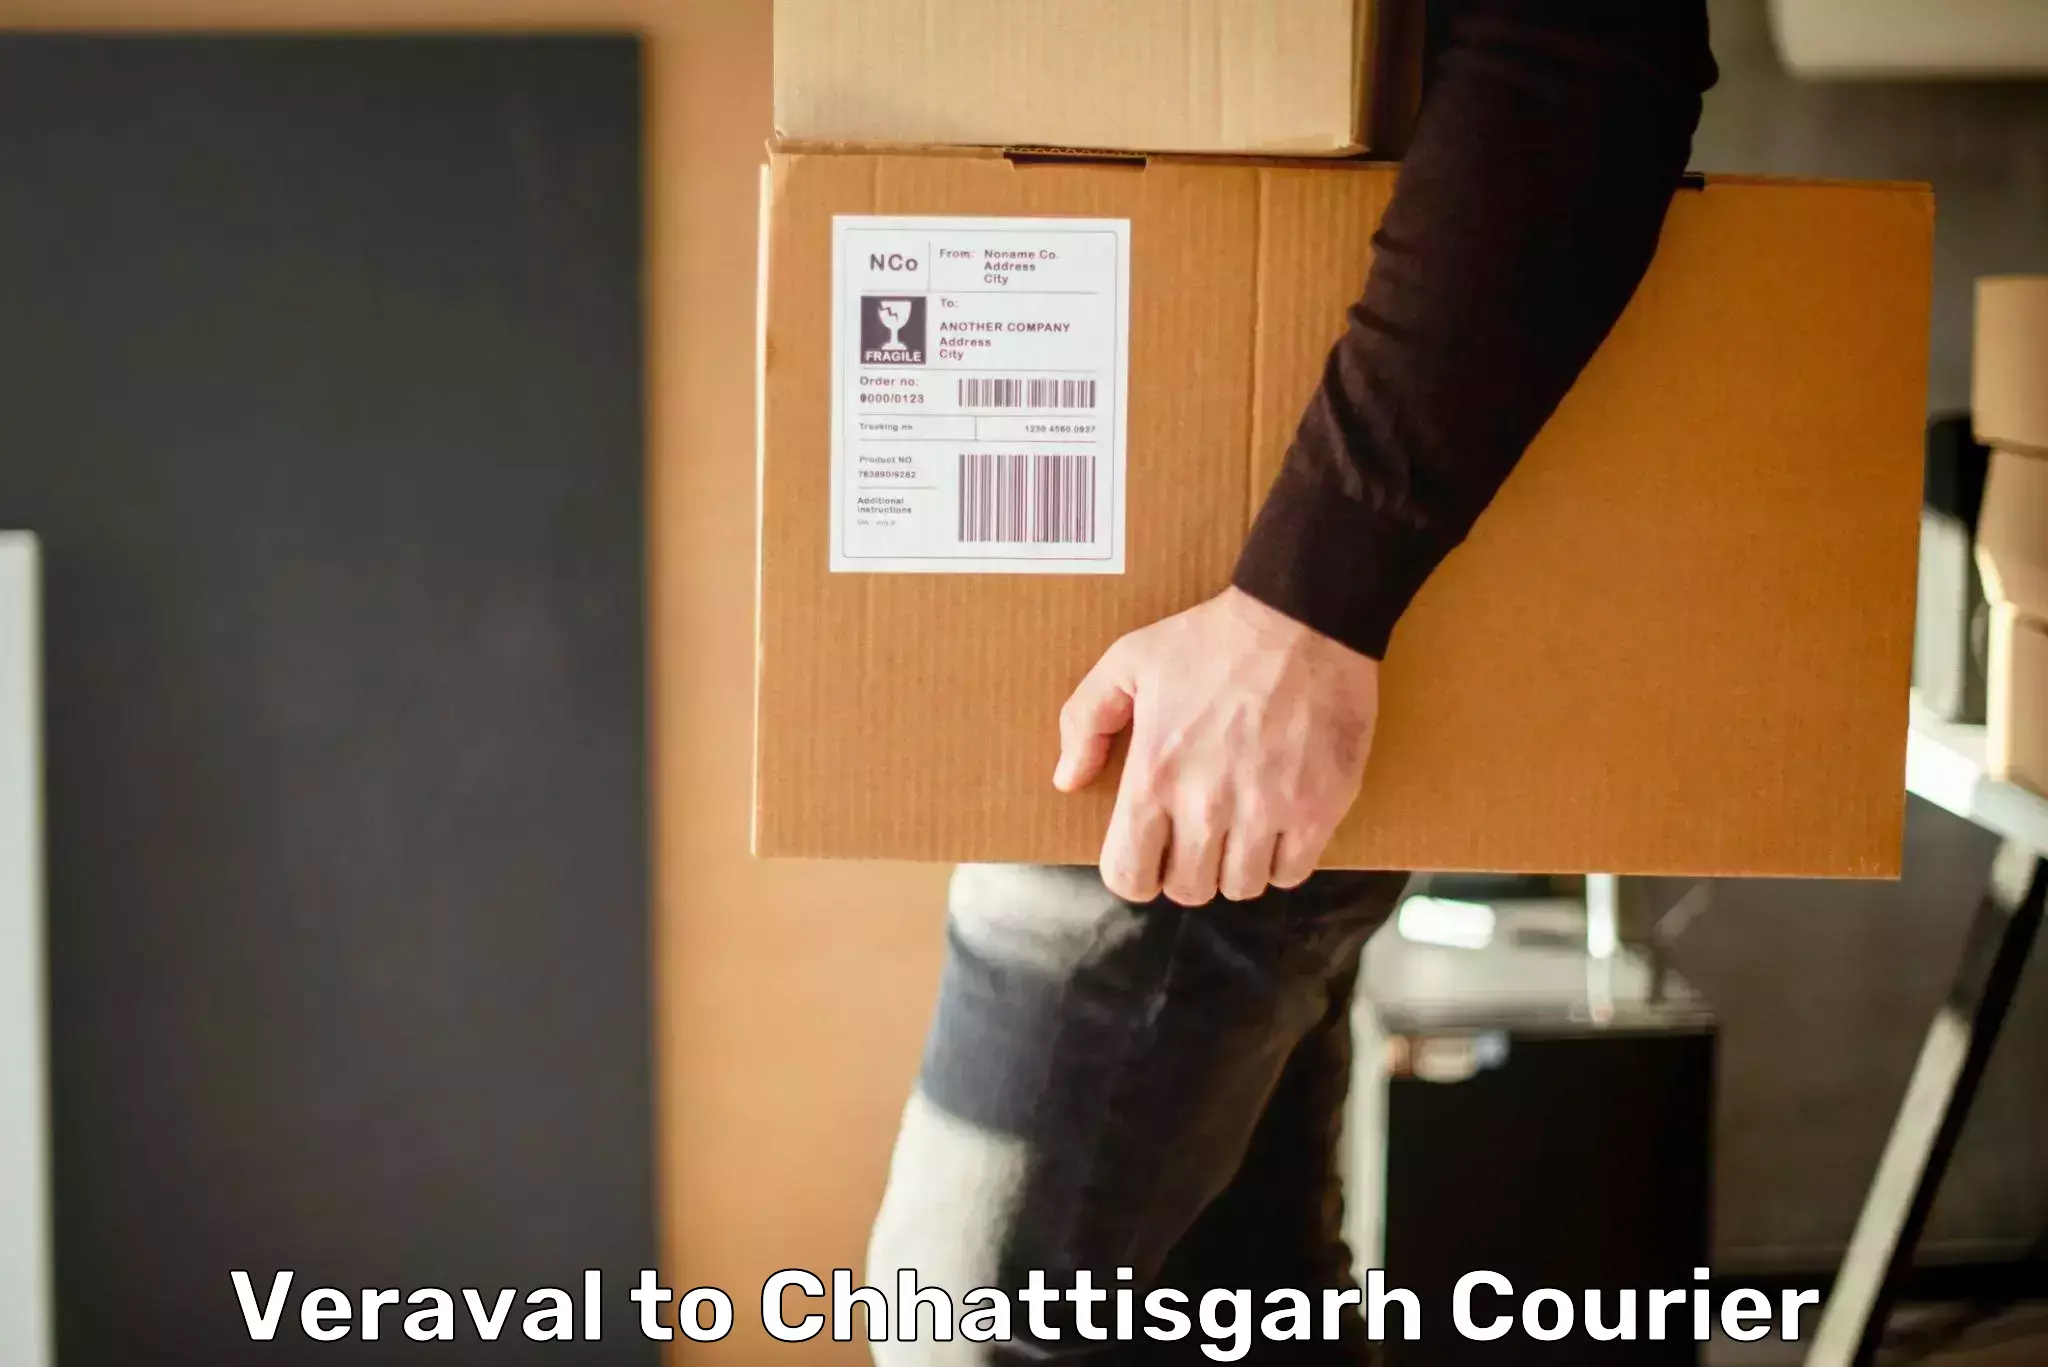 Trackable shipping service Veraval to Chhattisgarh